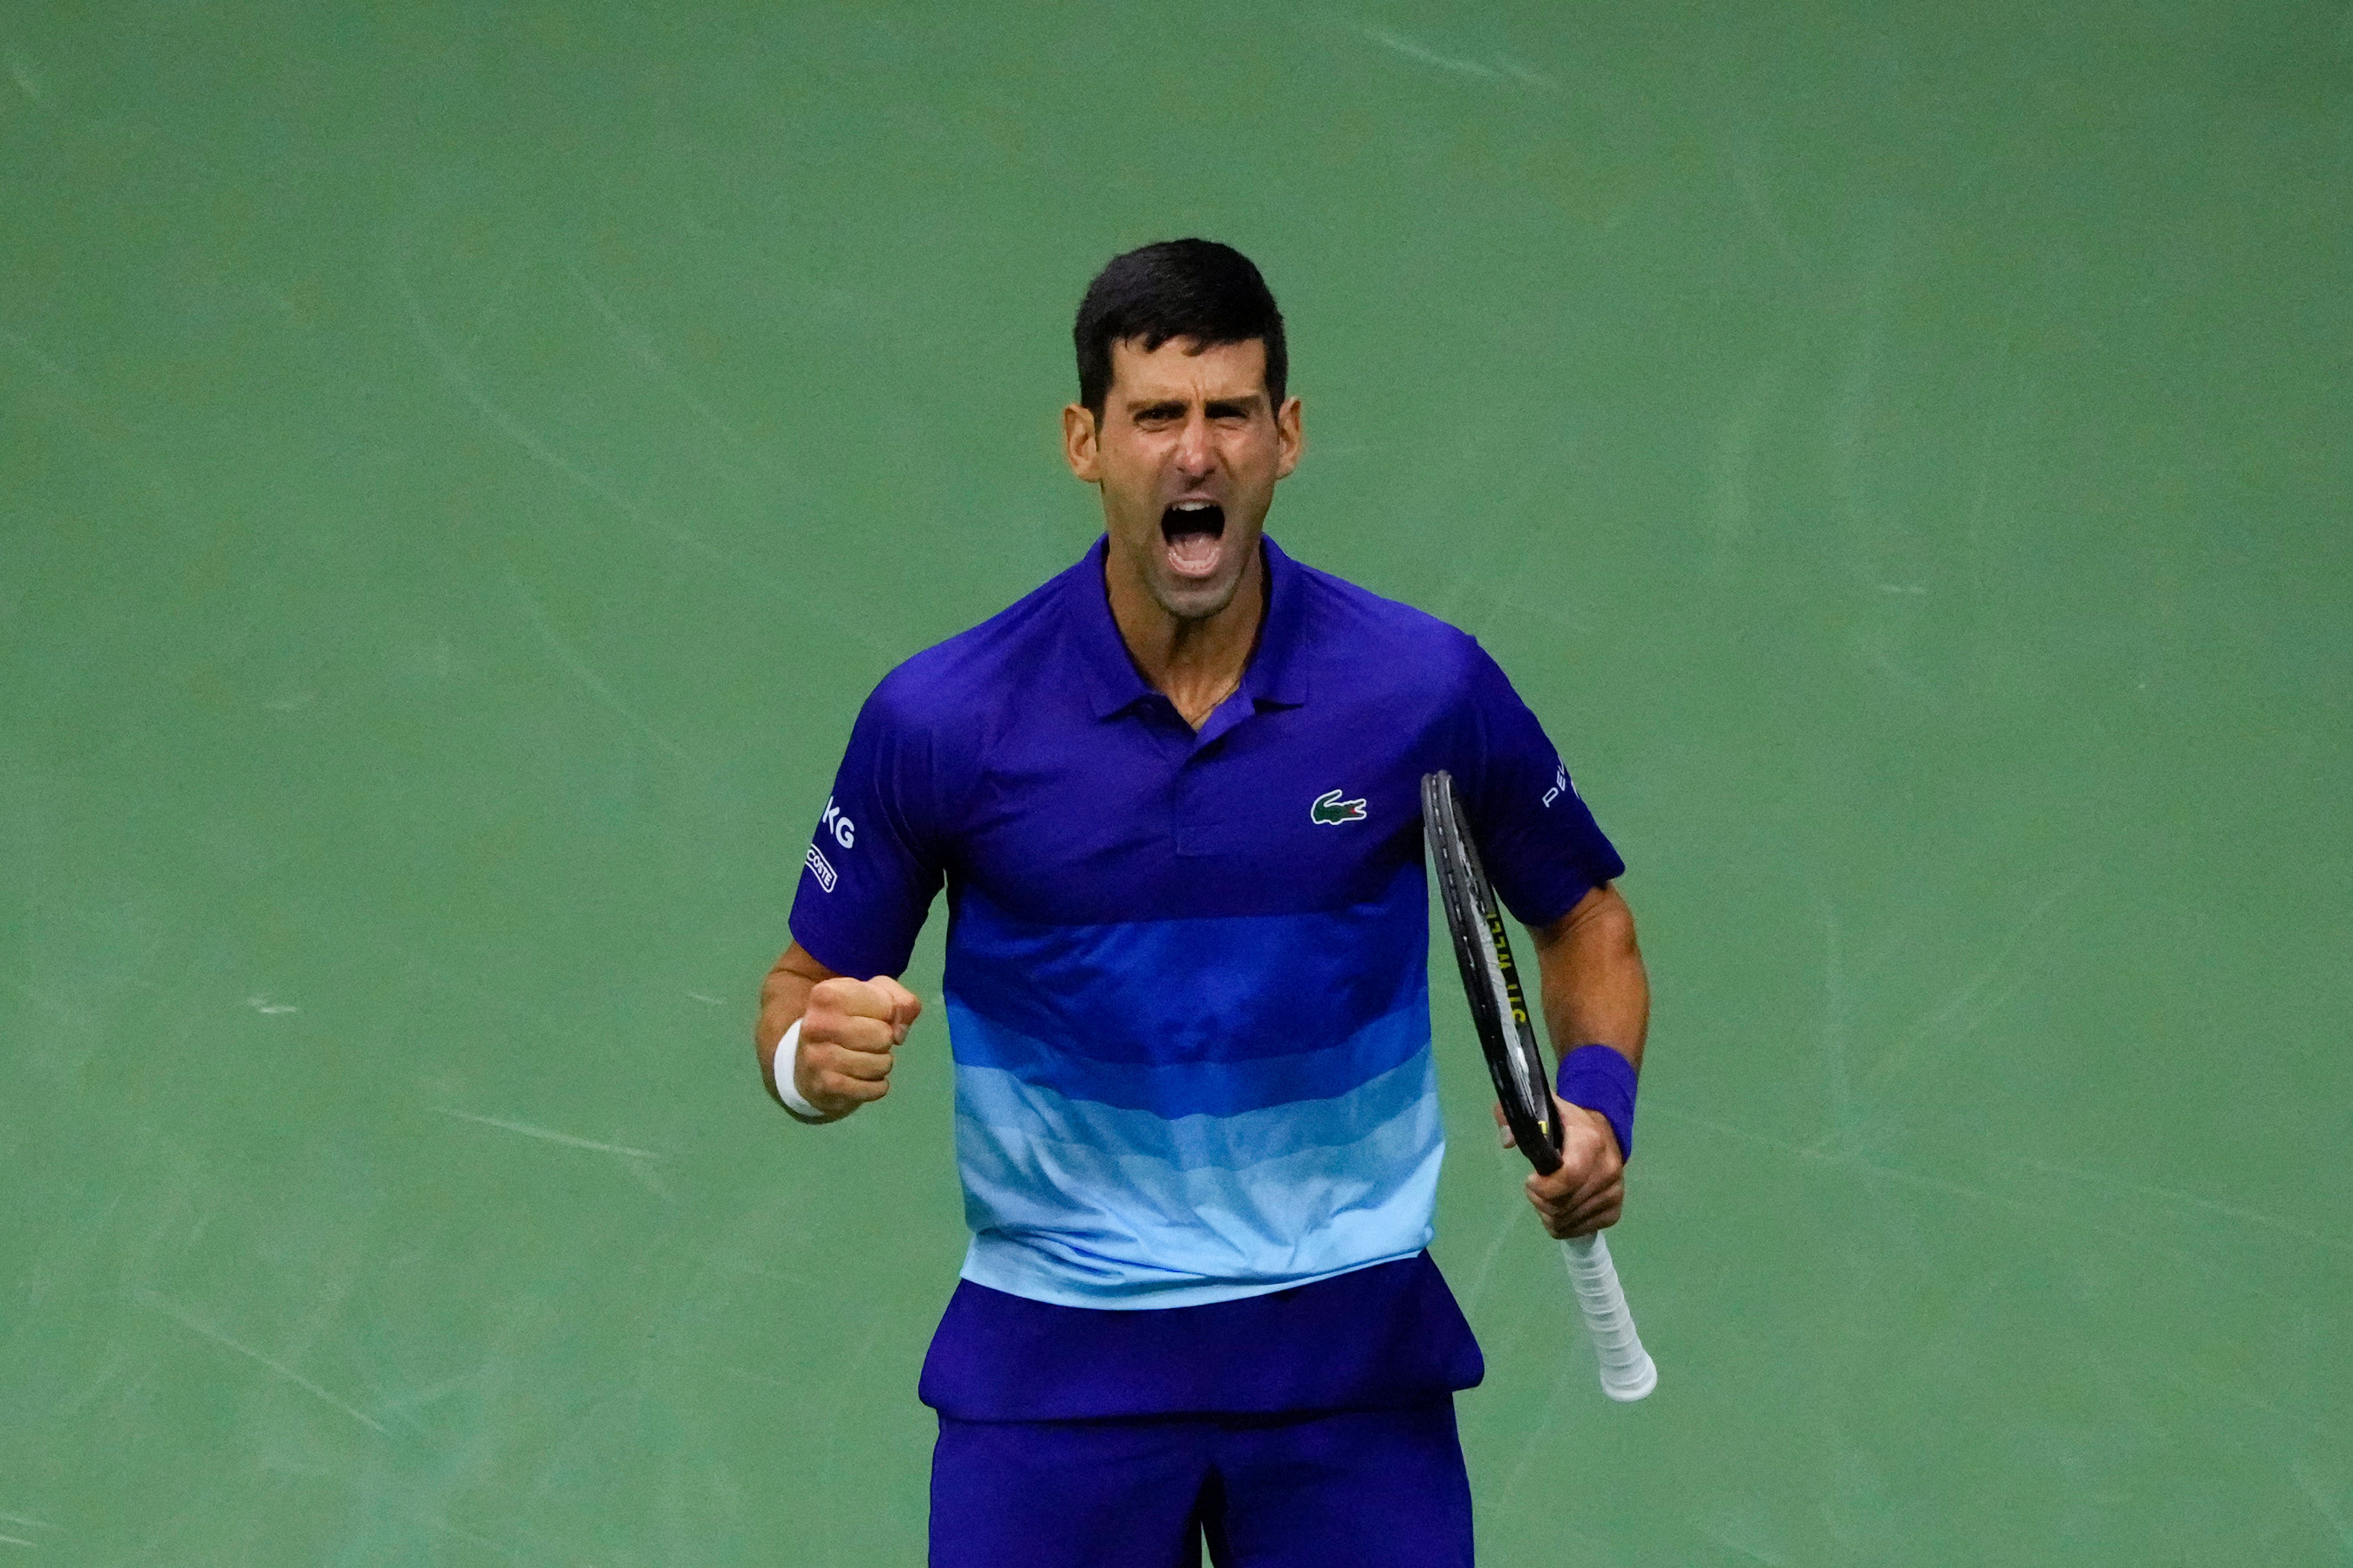 Novak Djokovic total career Grand Slams prediction made by John McEnroe